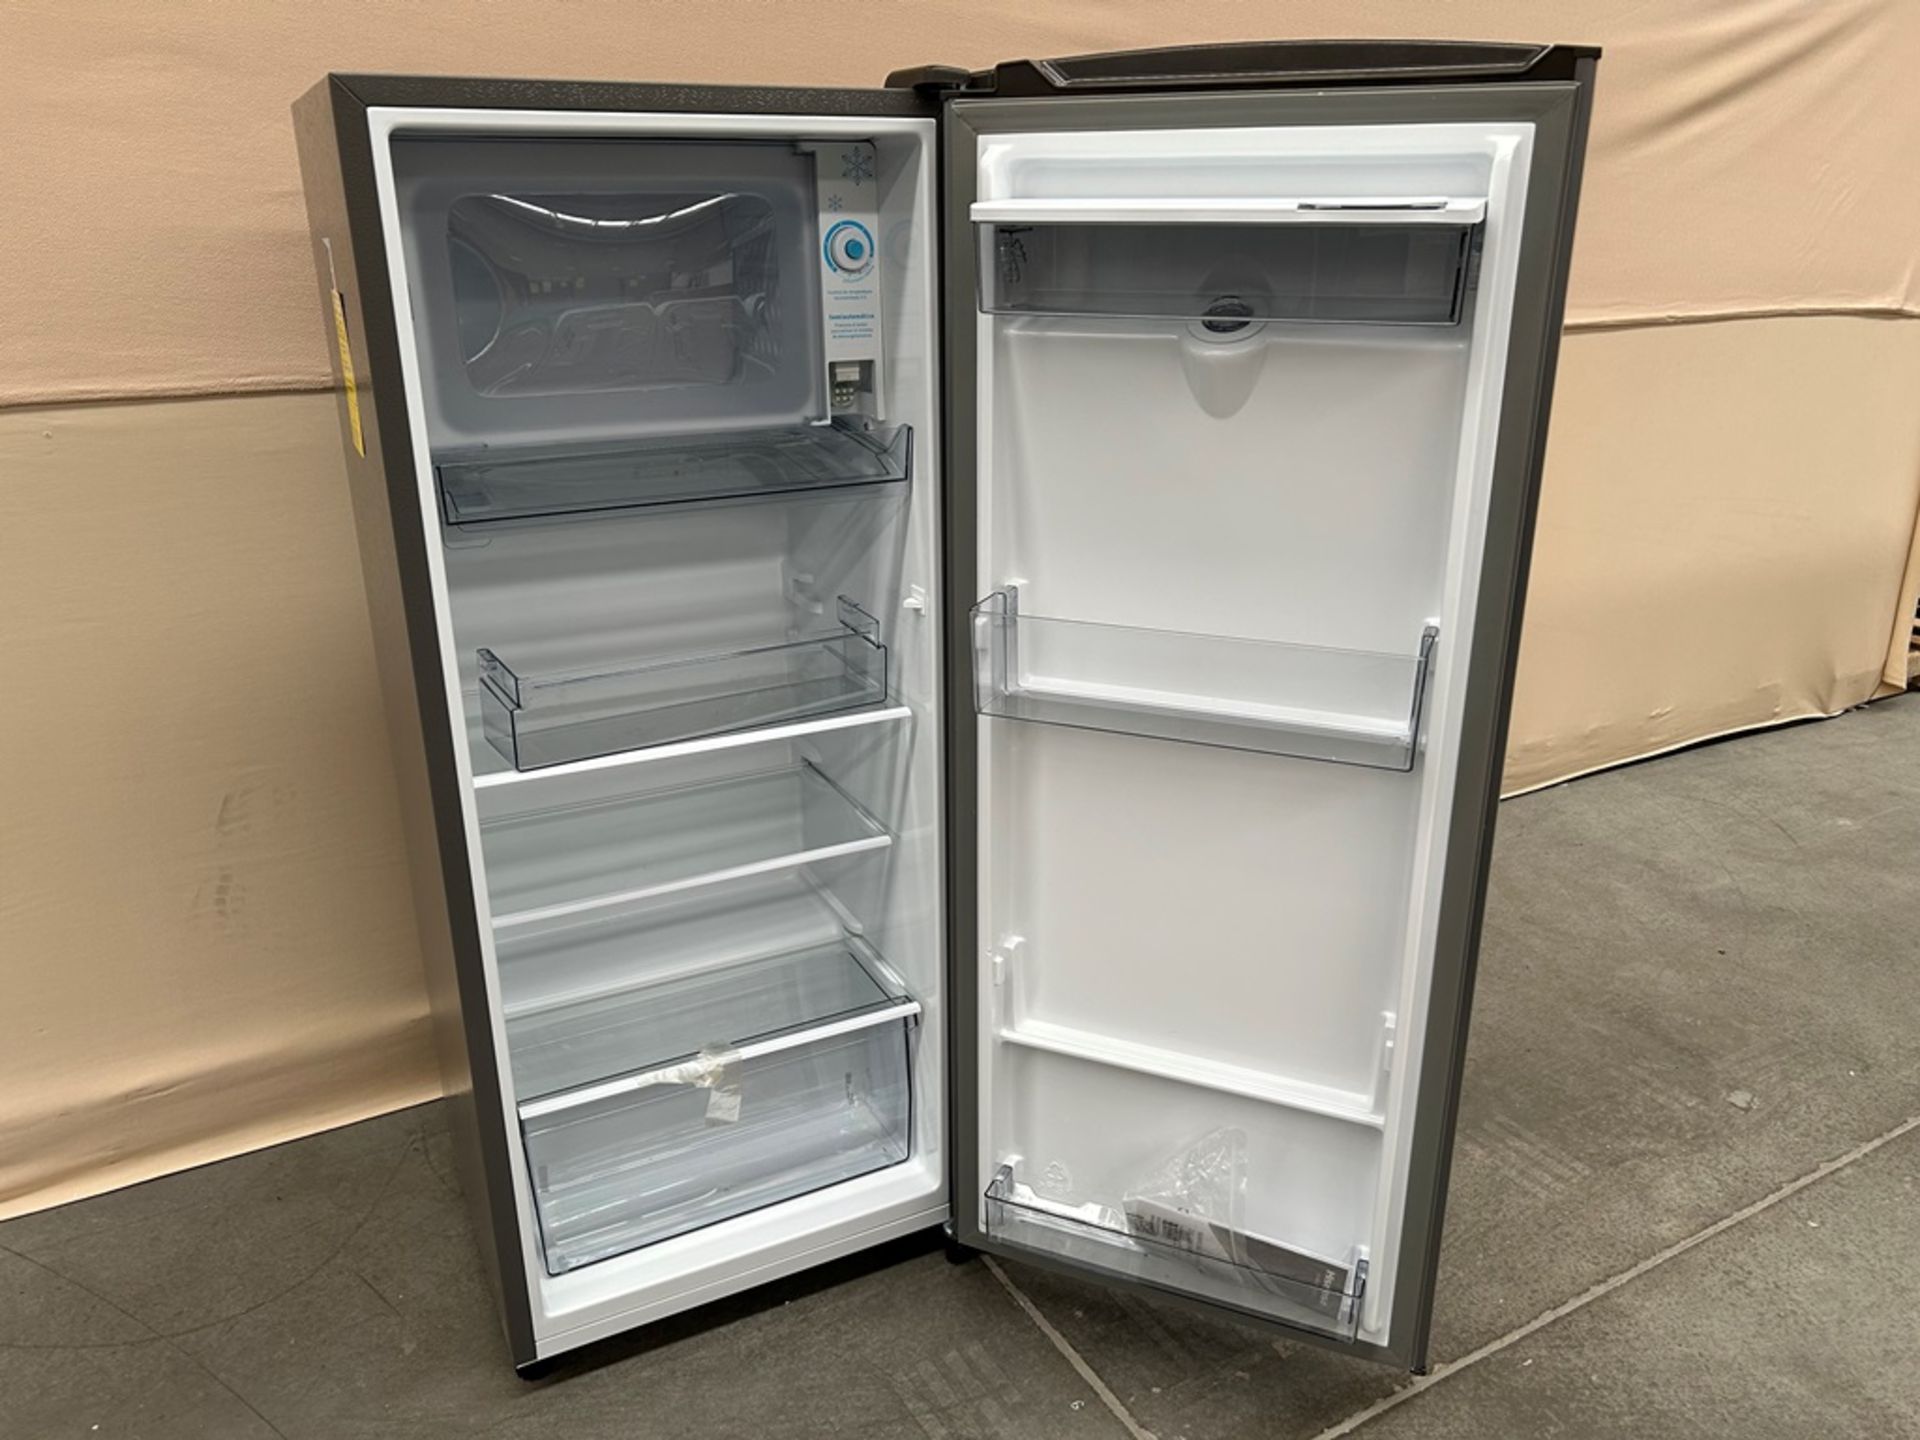 Lote de 2 refrigeradores contiene: Refrigerador con dispensador de agua Marca HISENSE, Modelo RR6D6 - Image 4 of 6